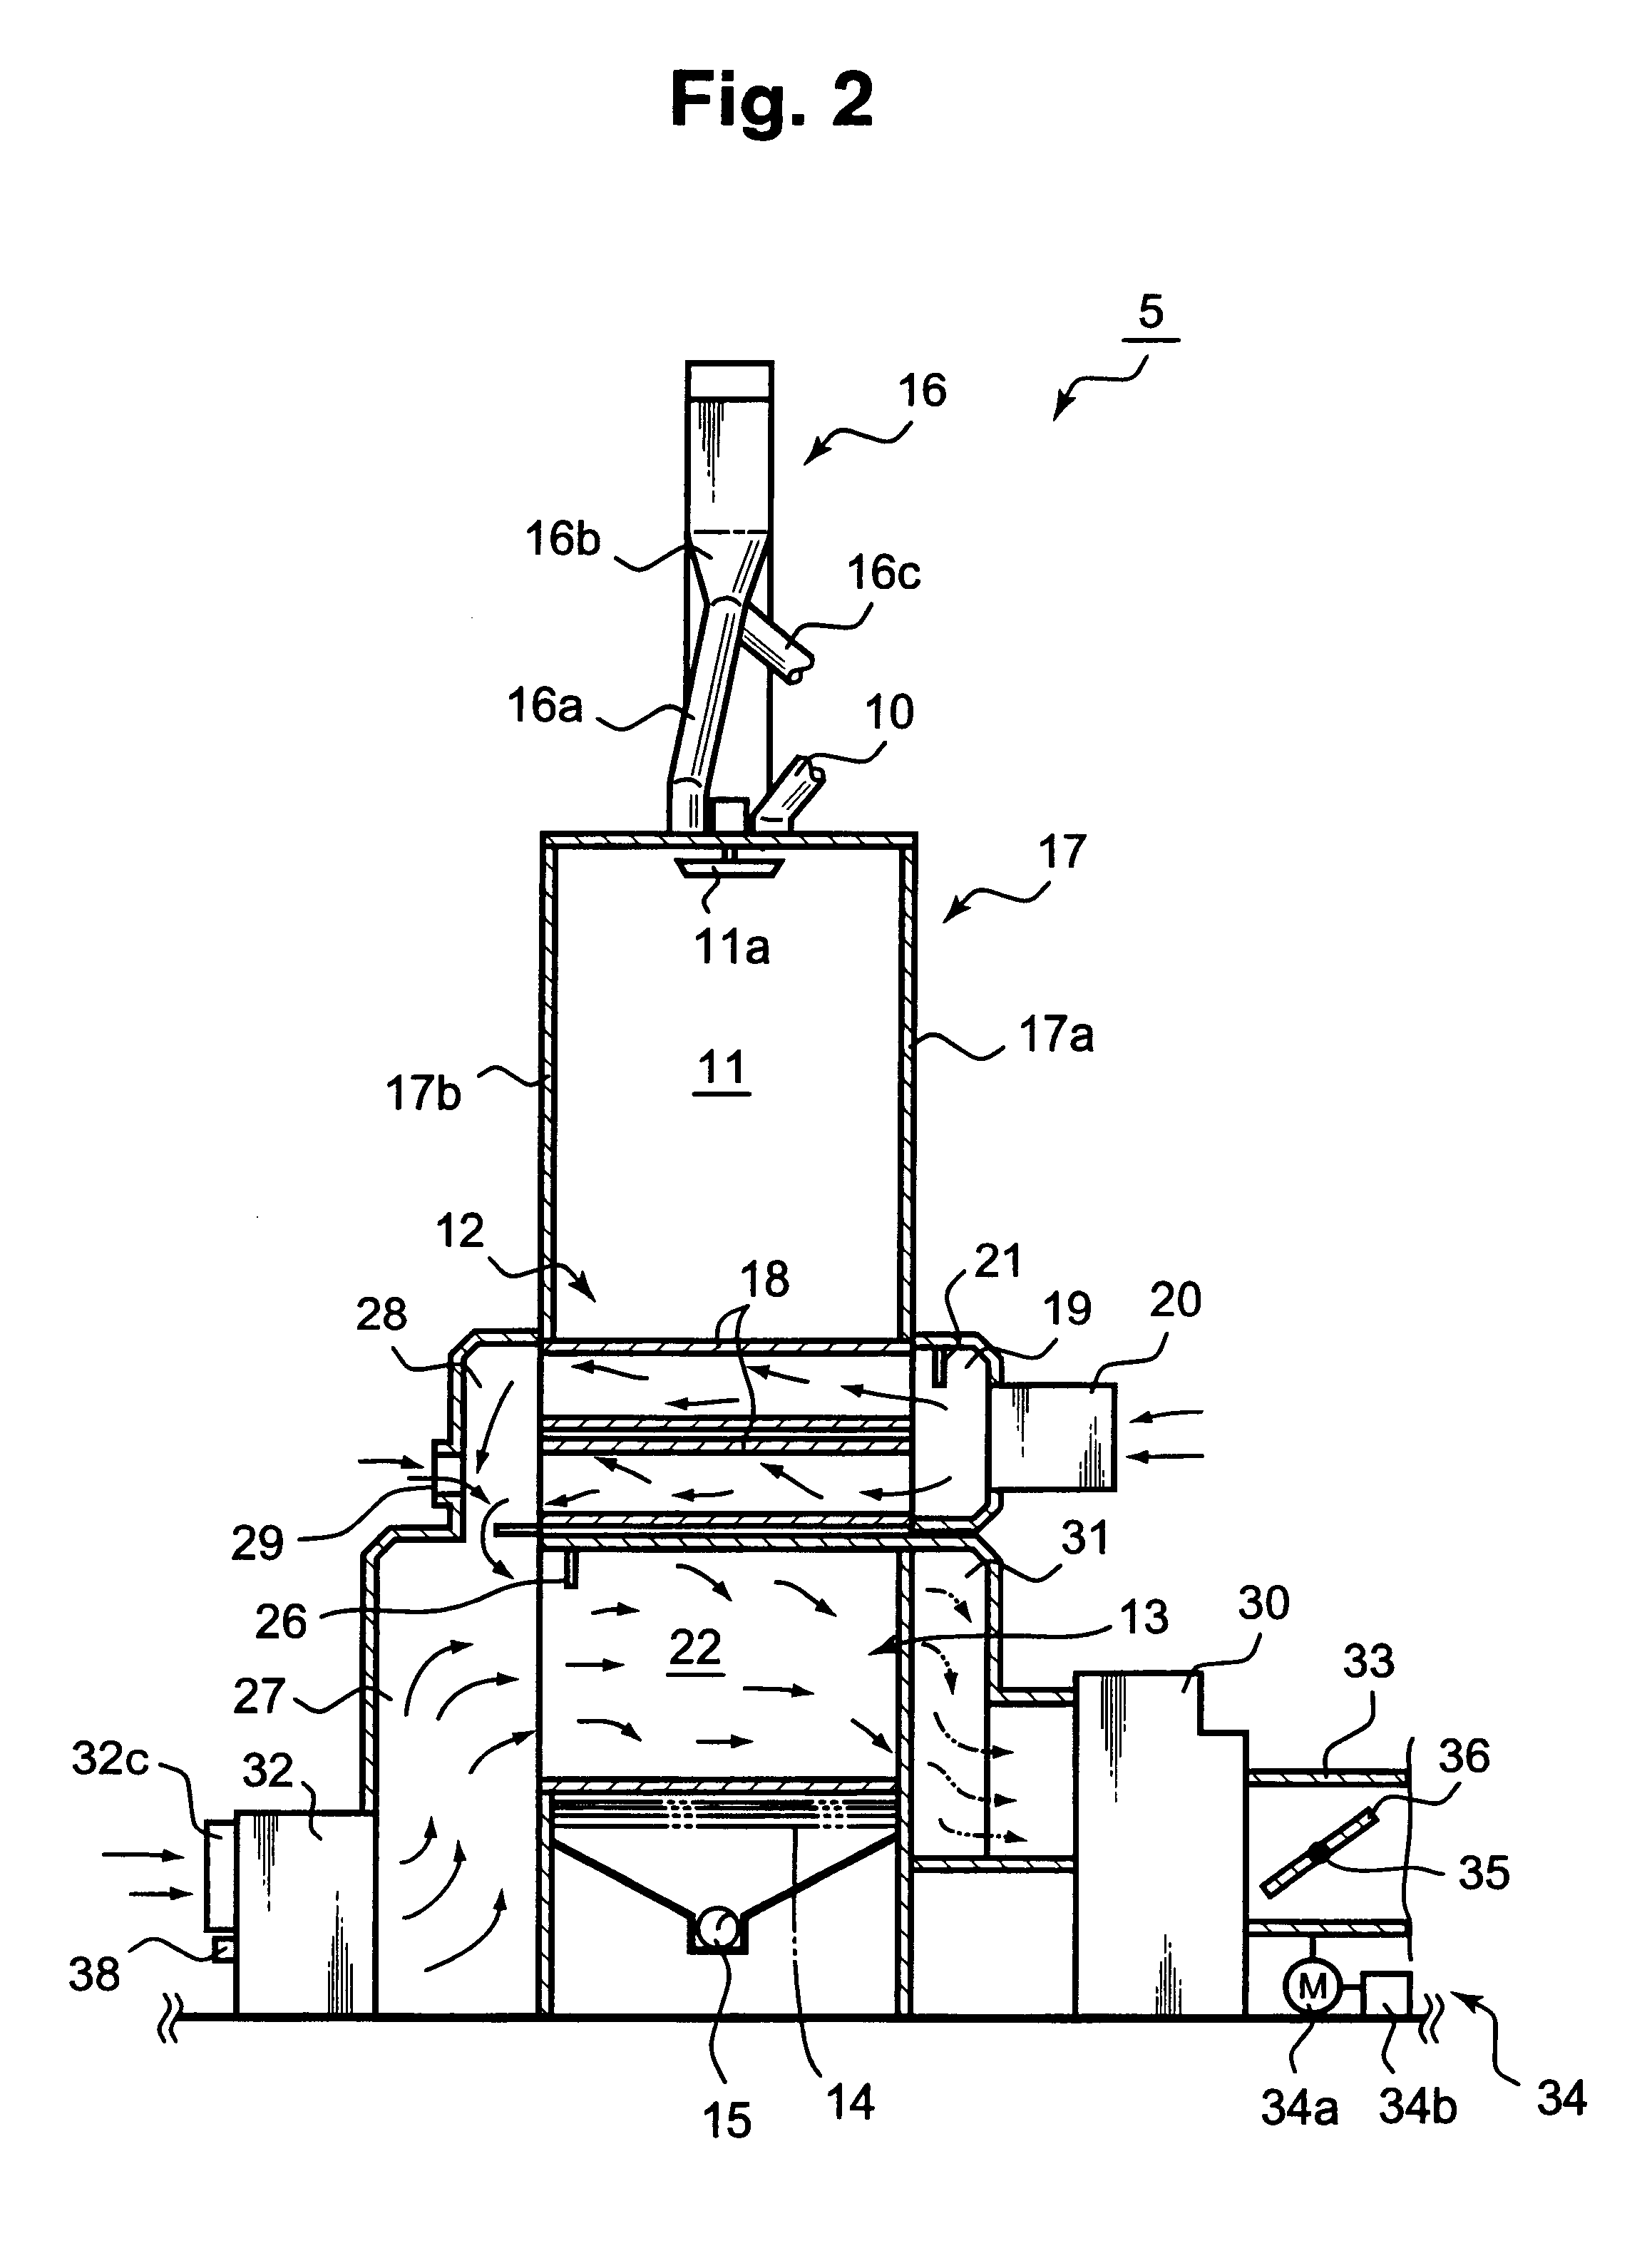 Circulating type grain drying machine